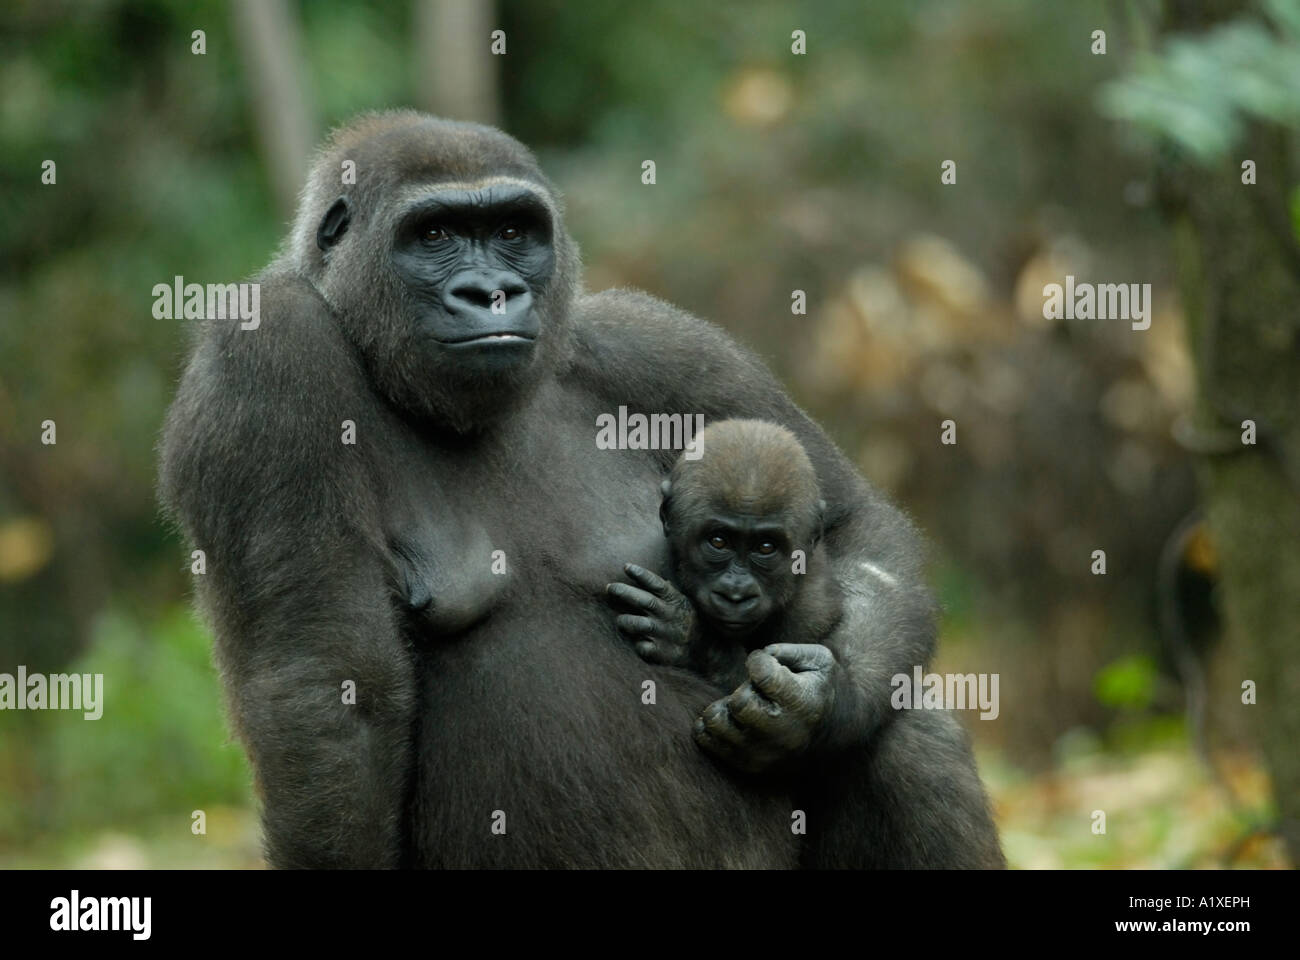 Madre gorila sosteniendo que llevaba a su bebé Foto de stock